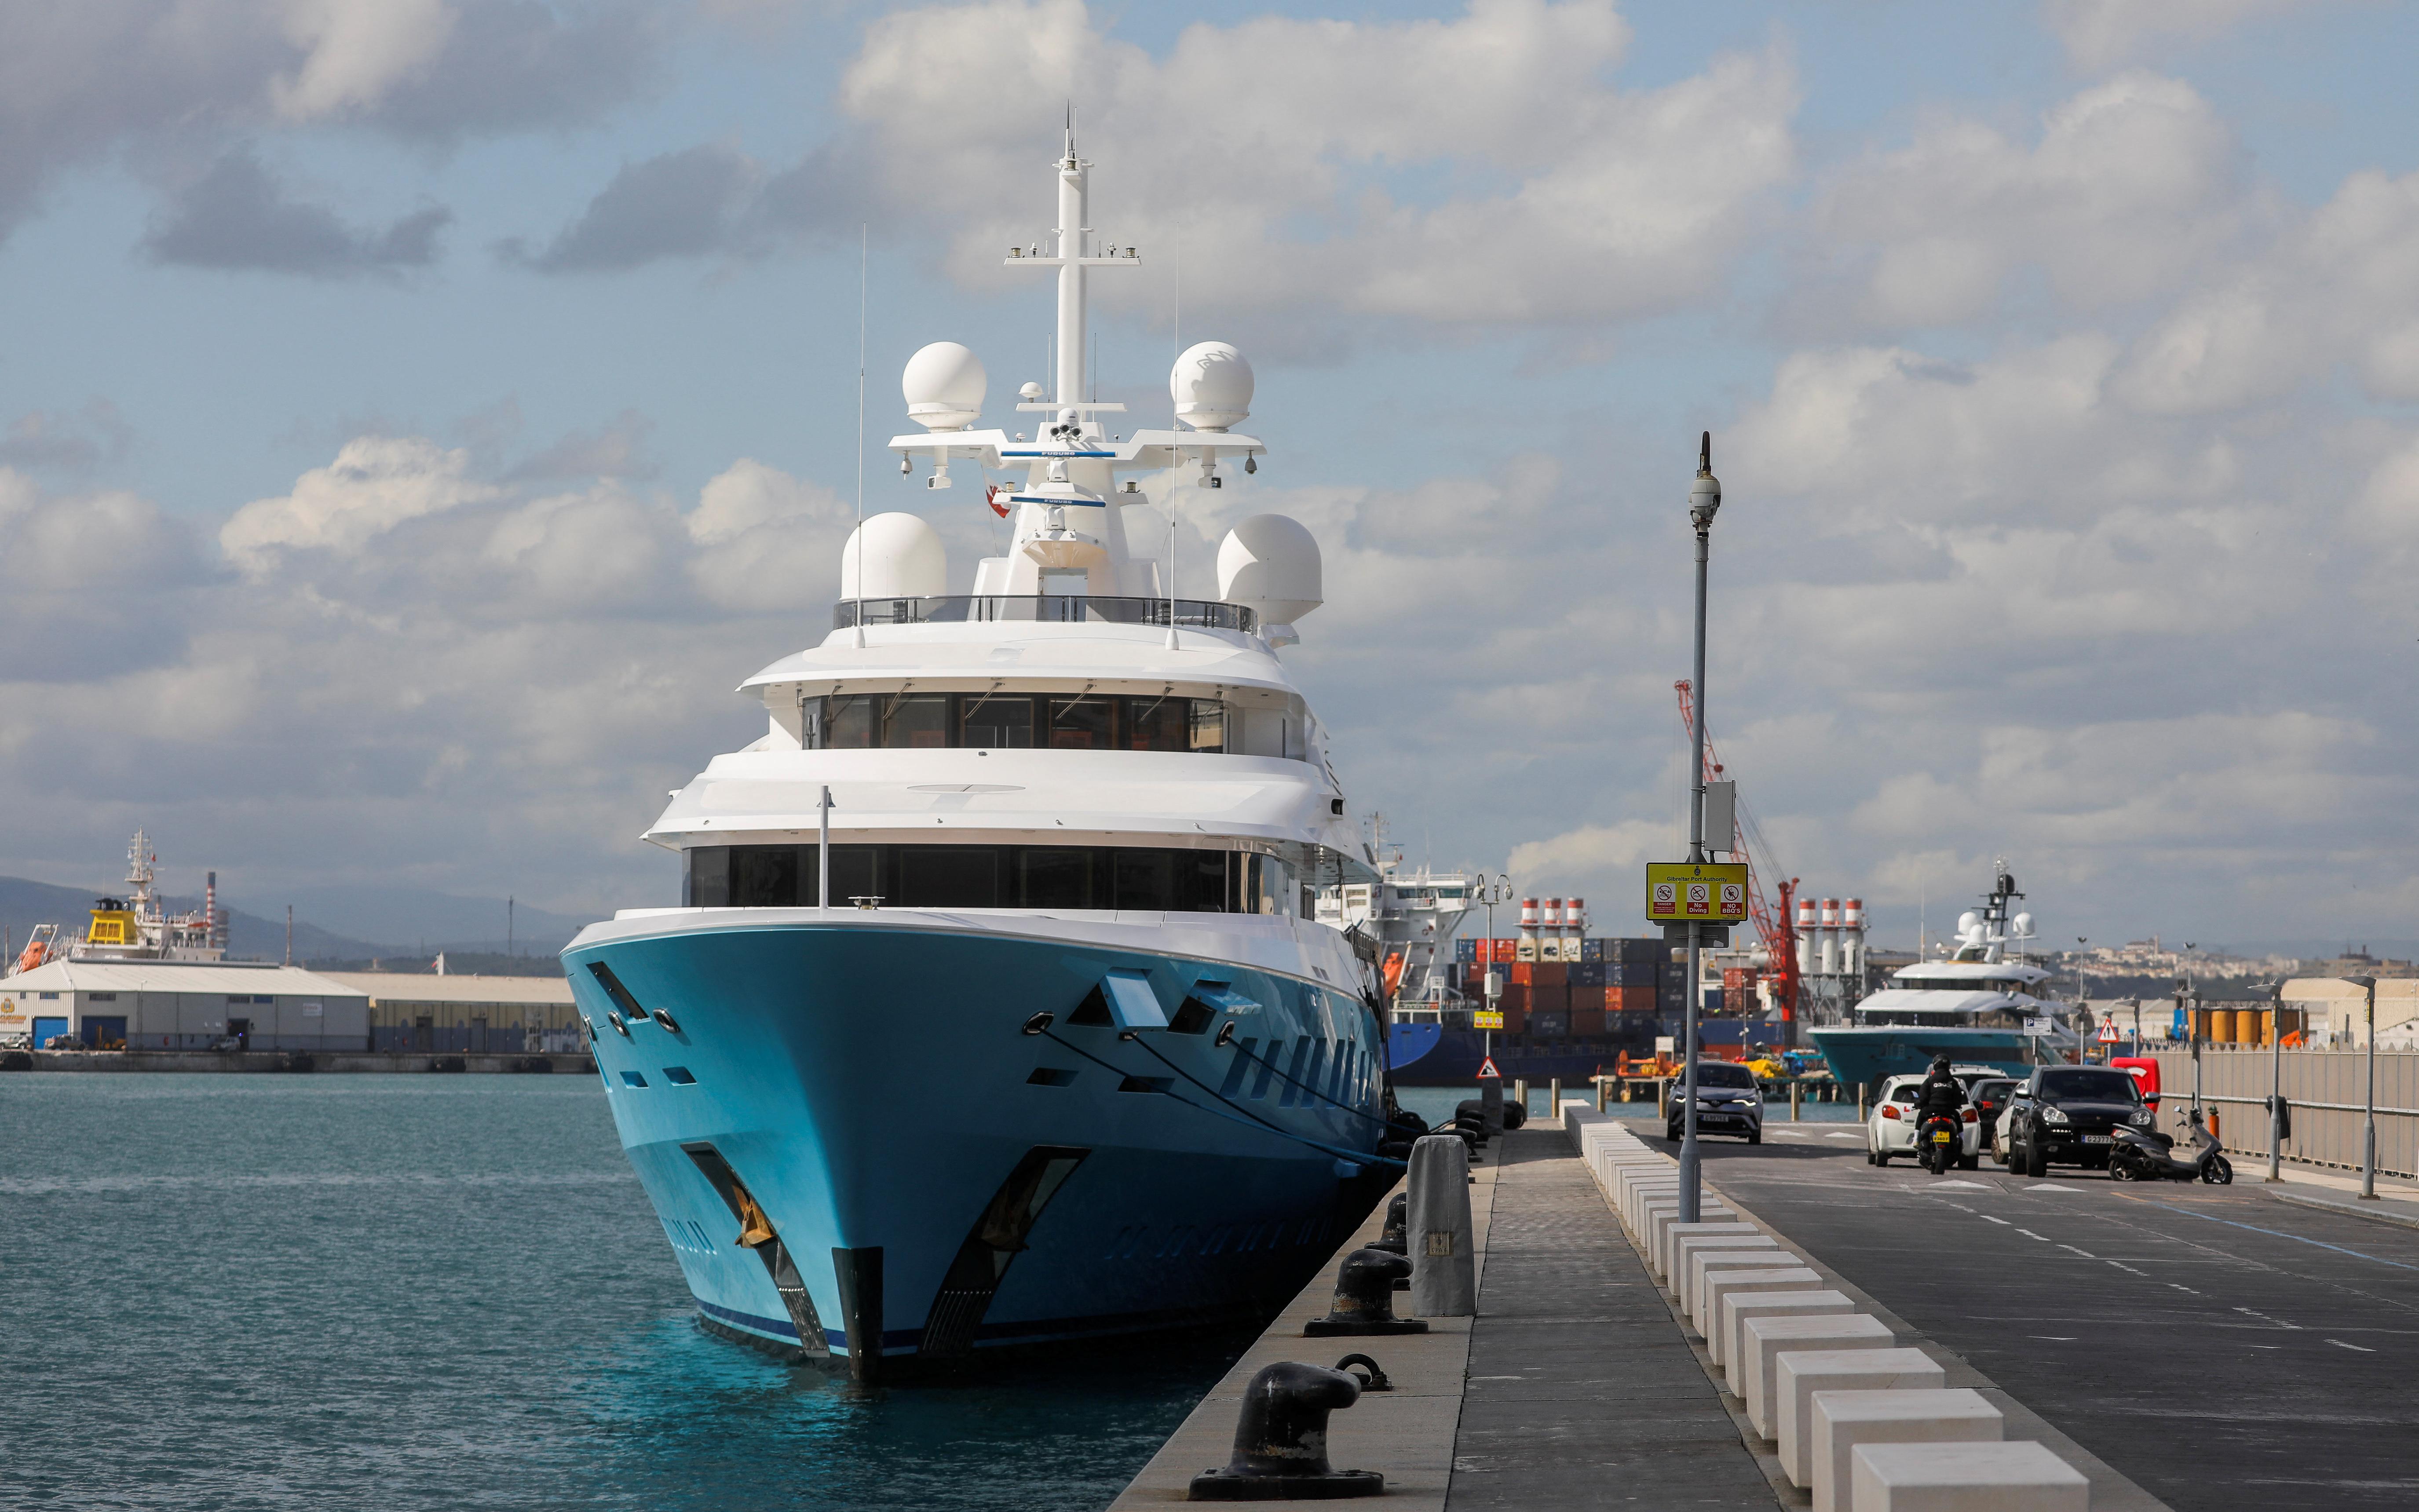 Reuters узнал о продаже «яхты Пумпянского» на аукционе"/>













